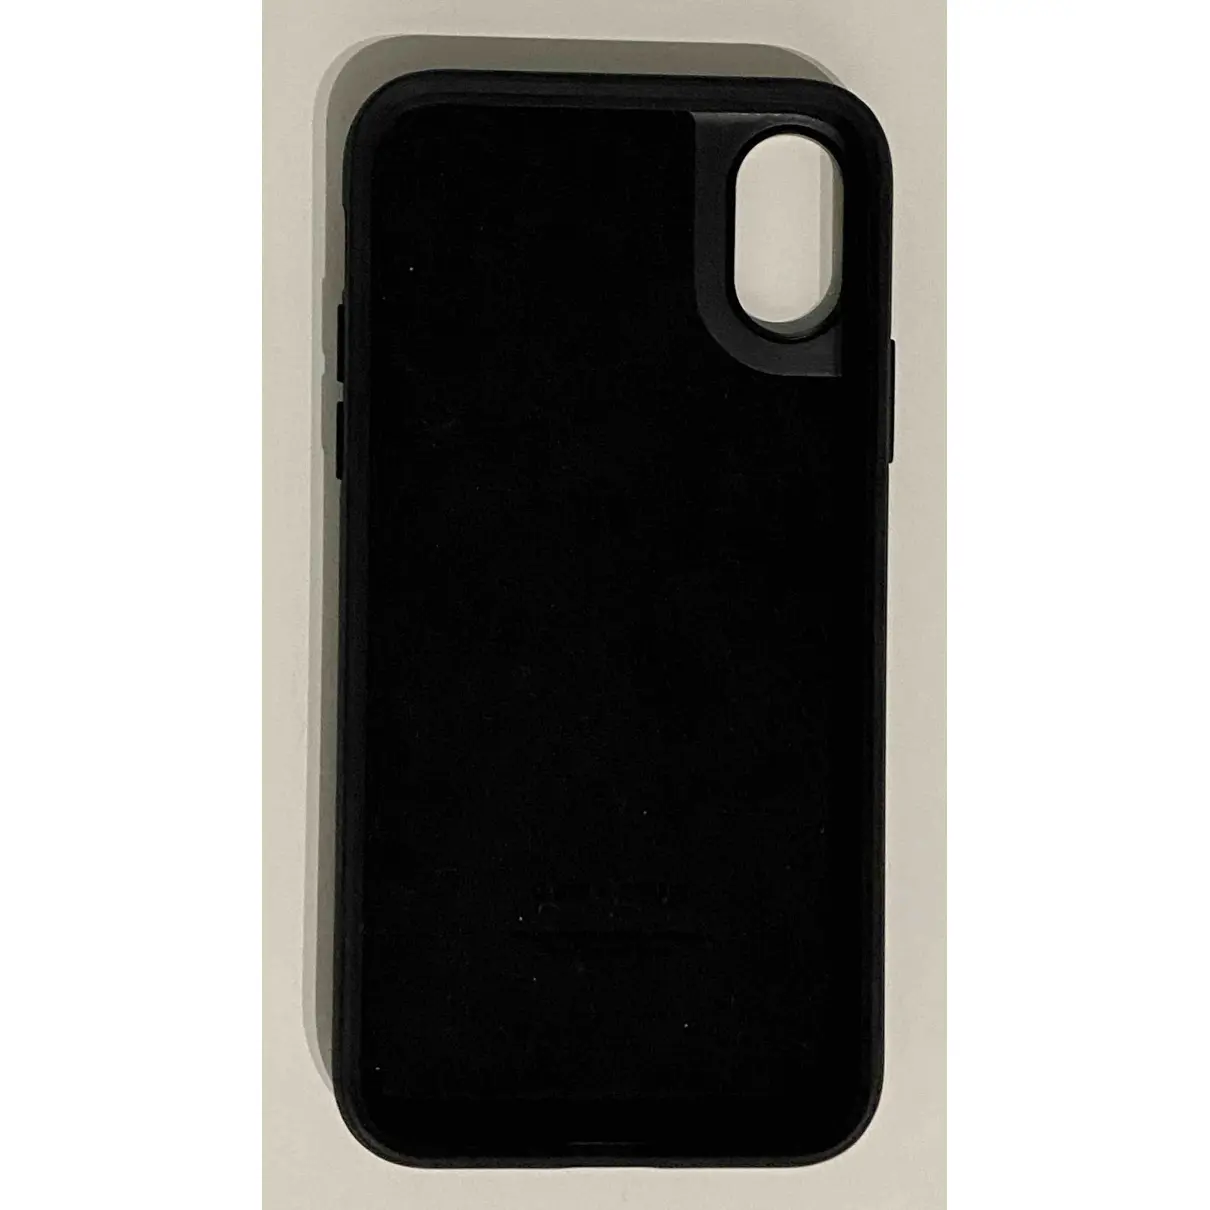 Buy Moncler Genius Iphone case online